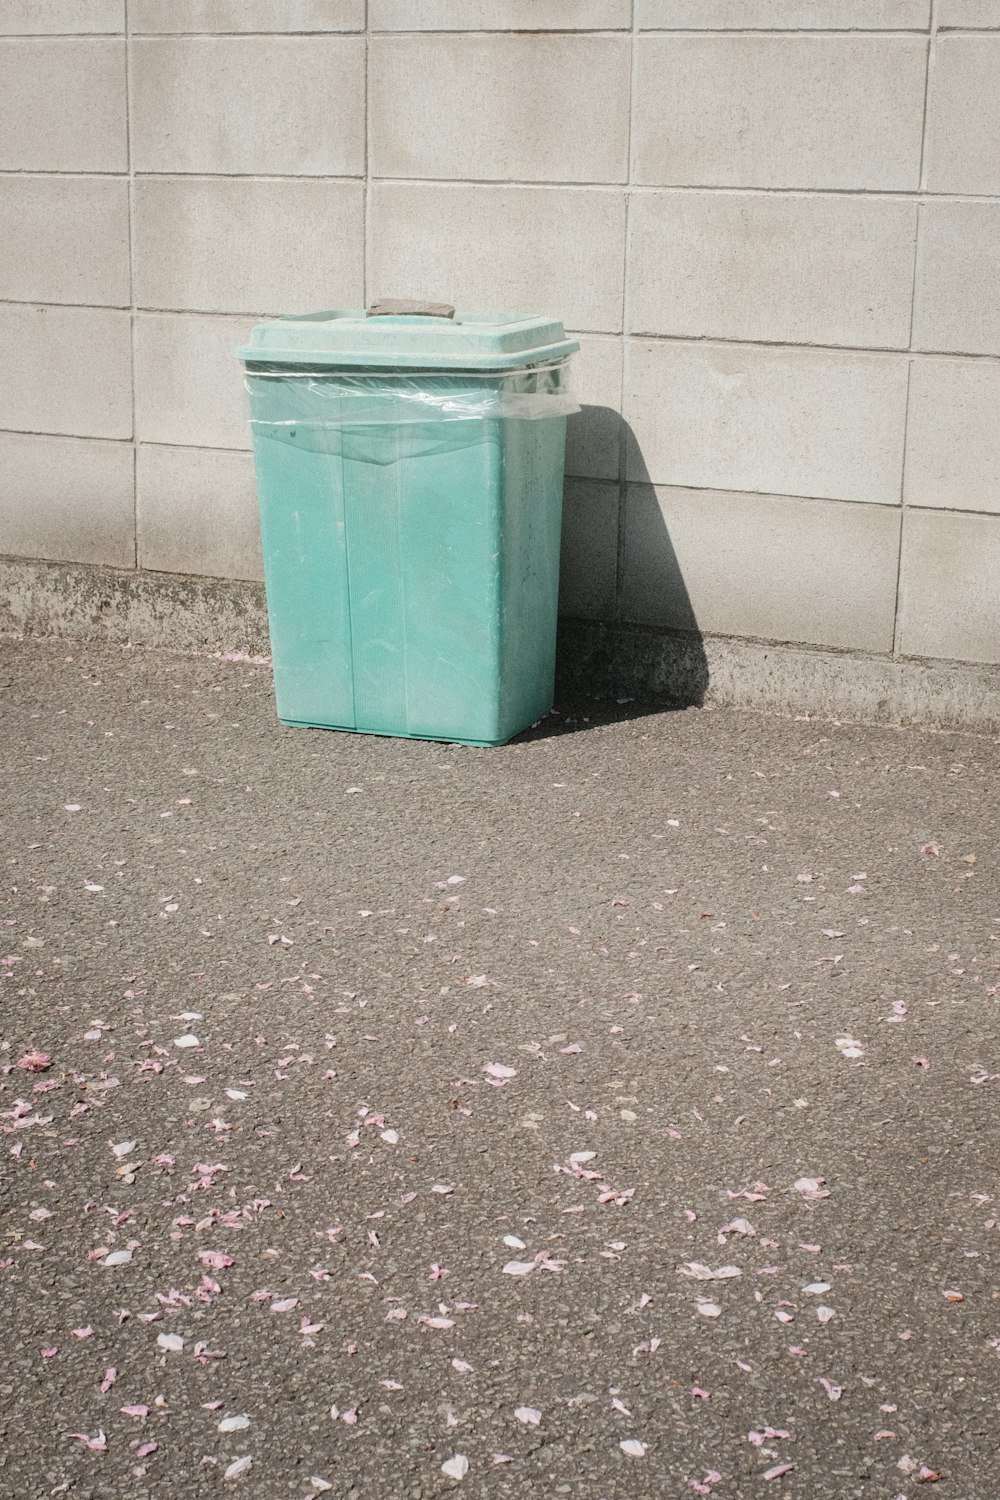 Cubo de basura de plástico verde junto a la pared blanca